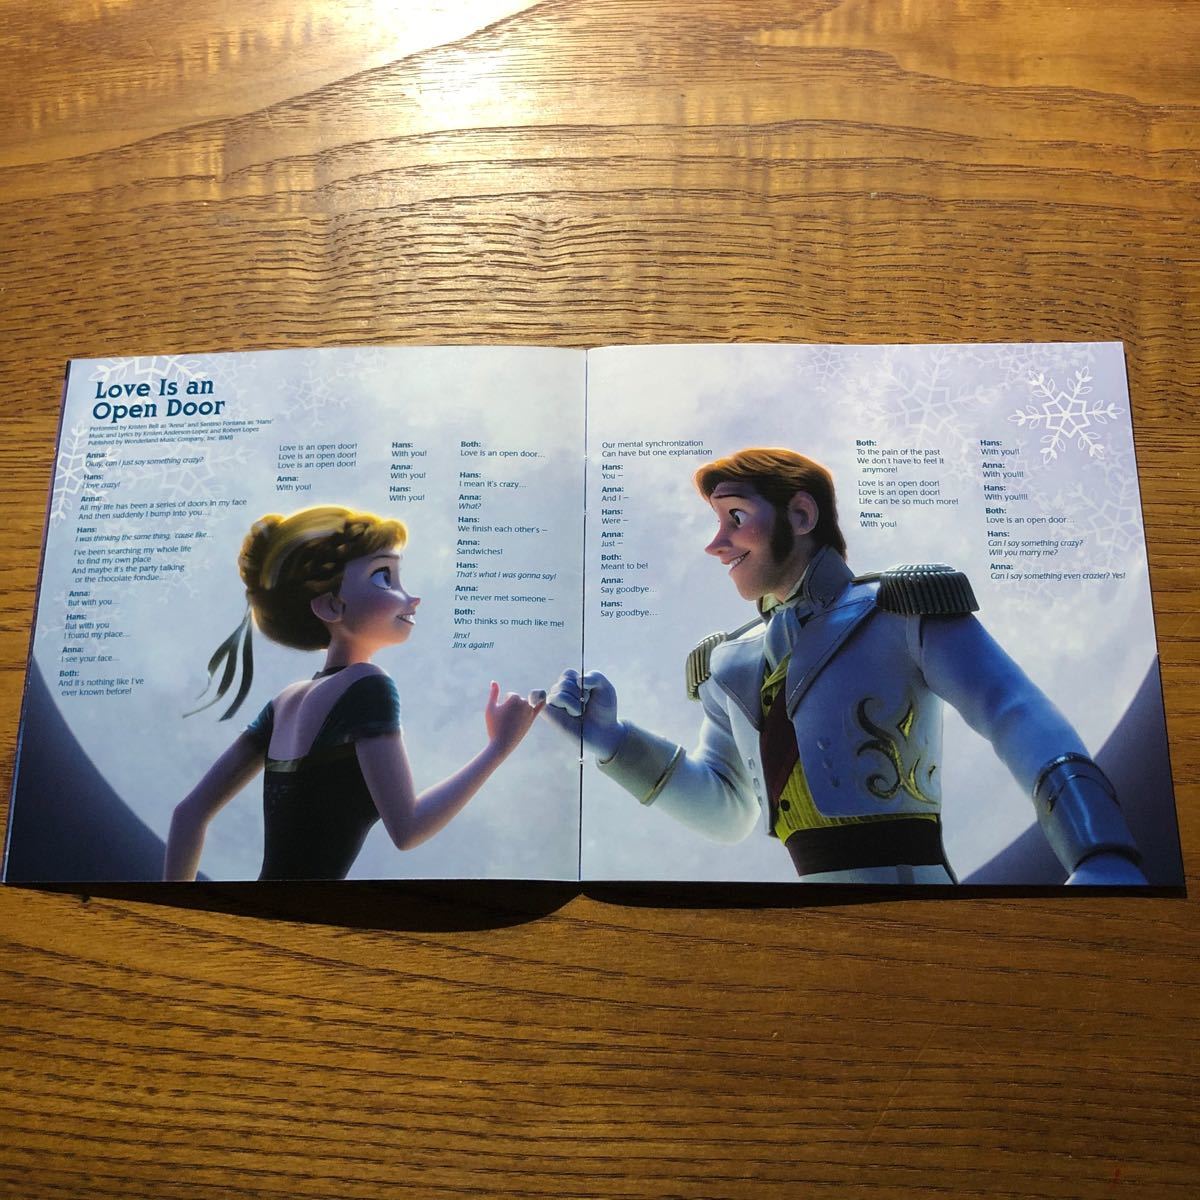 SALE／64%OFF】 Disney Frozen 2 アナと雪の女王 Original Soundtrack サントラ サウンドトラック  スペシャル ギフト パック CD 輸入盤 utile-arras.fr